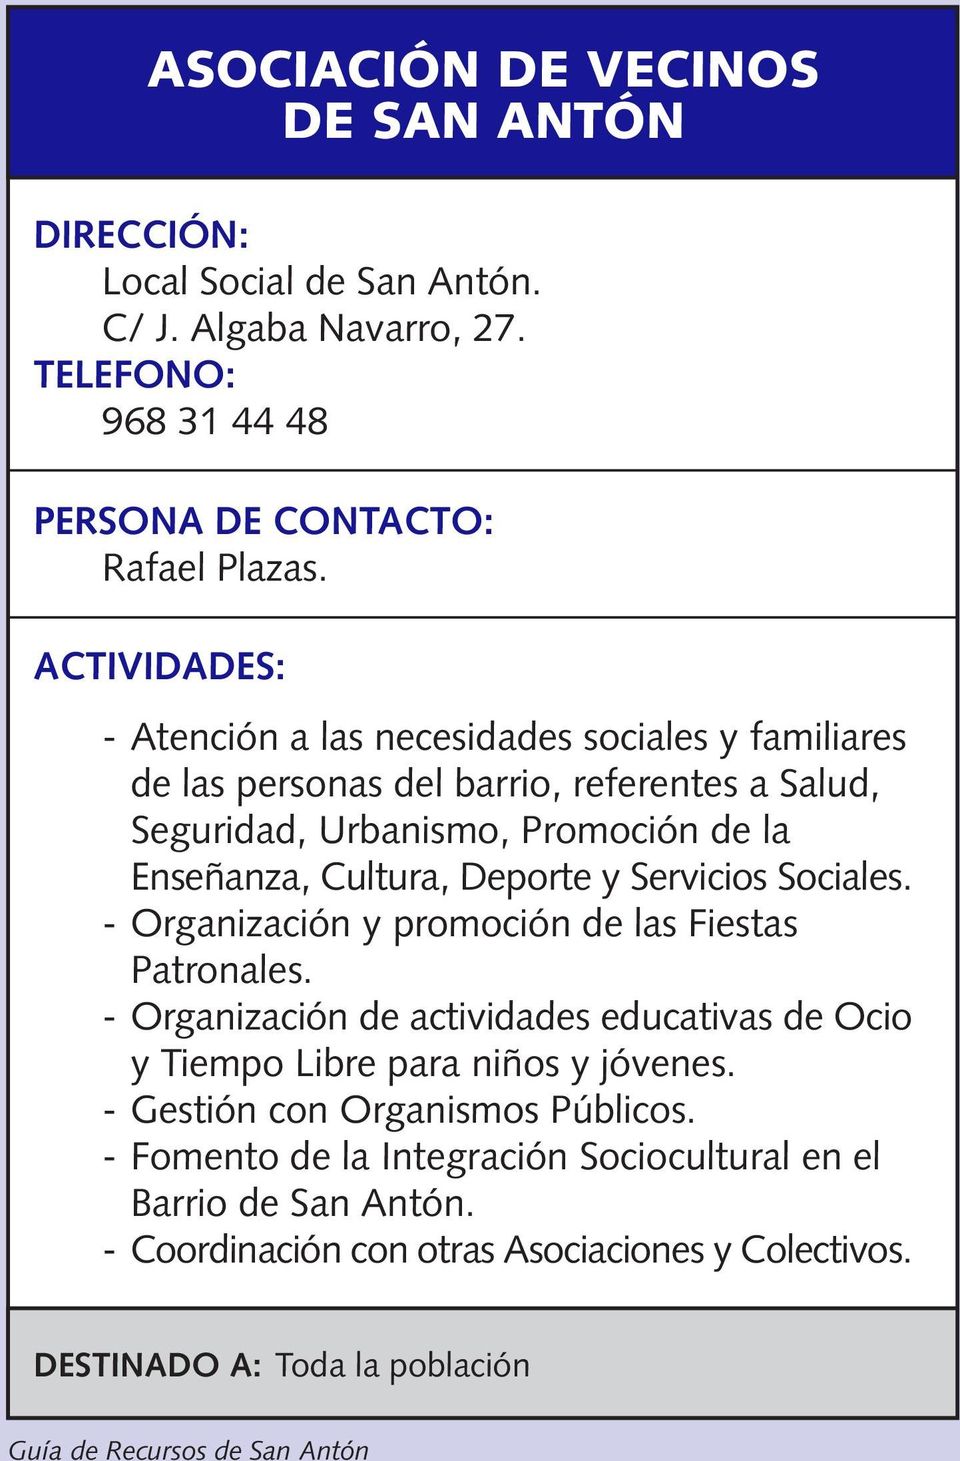 Deporte y Servicios Sociales. - Organización y promoción de las Fiestas Patronales.